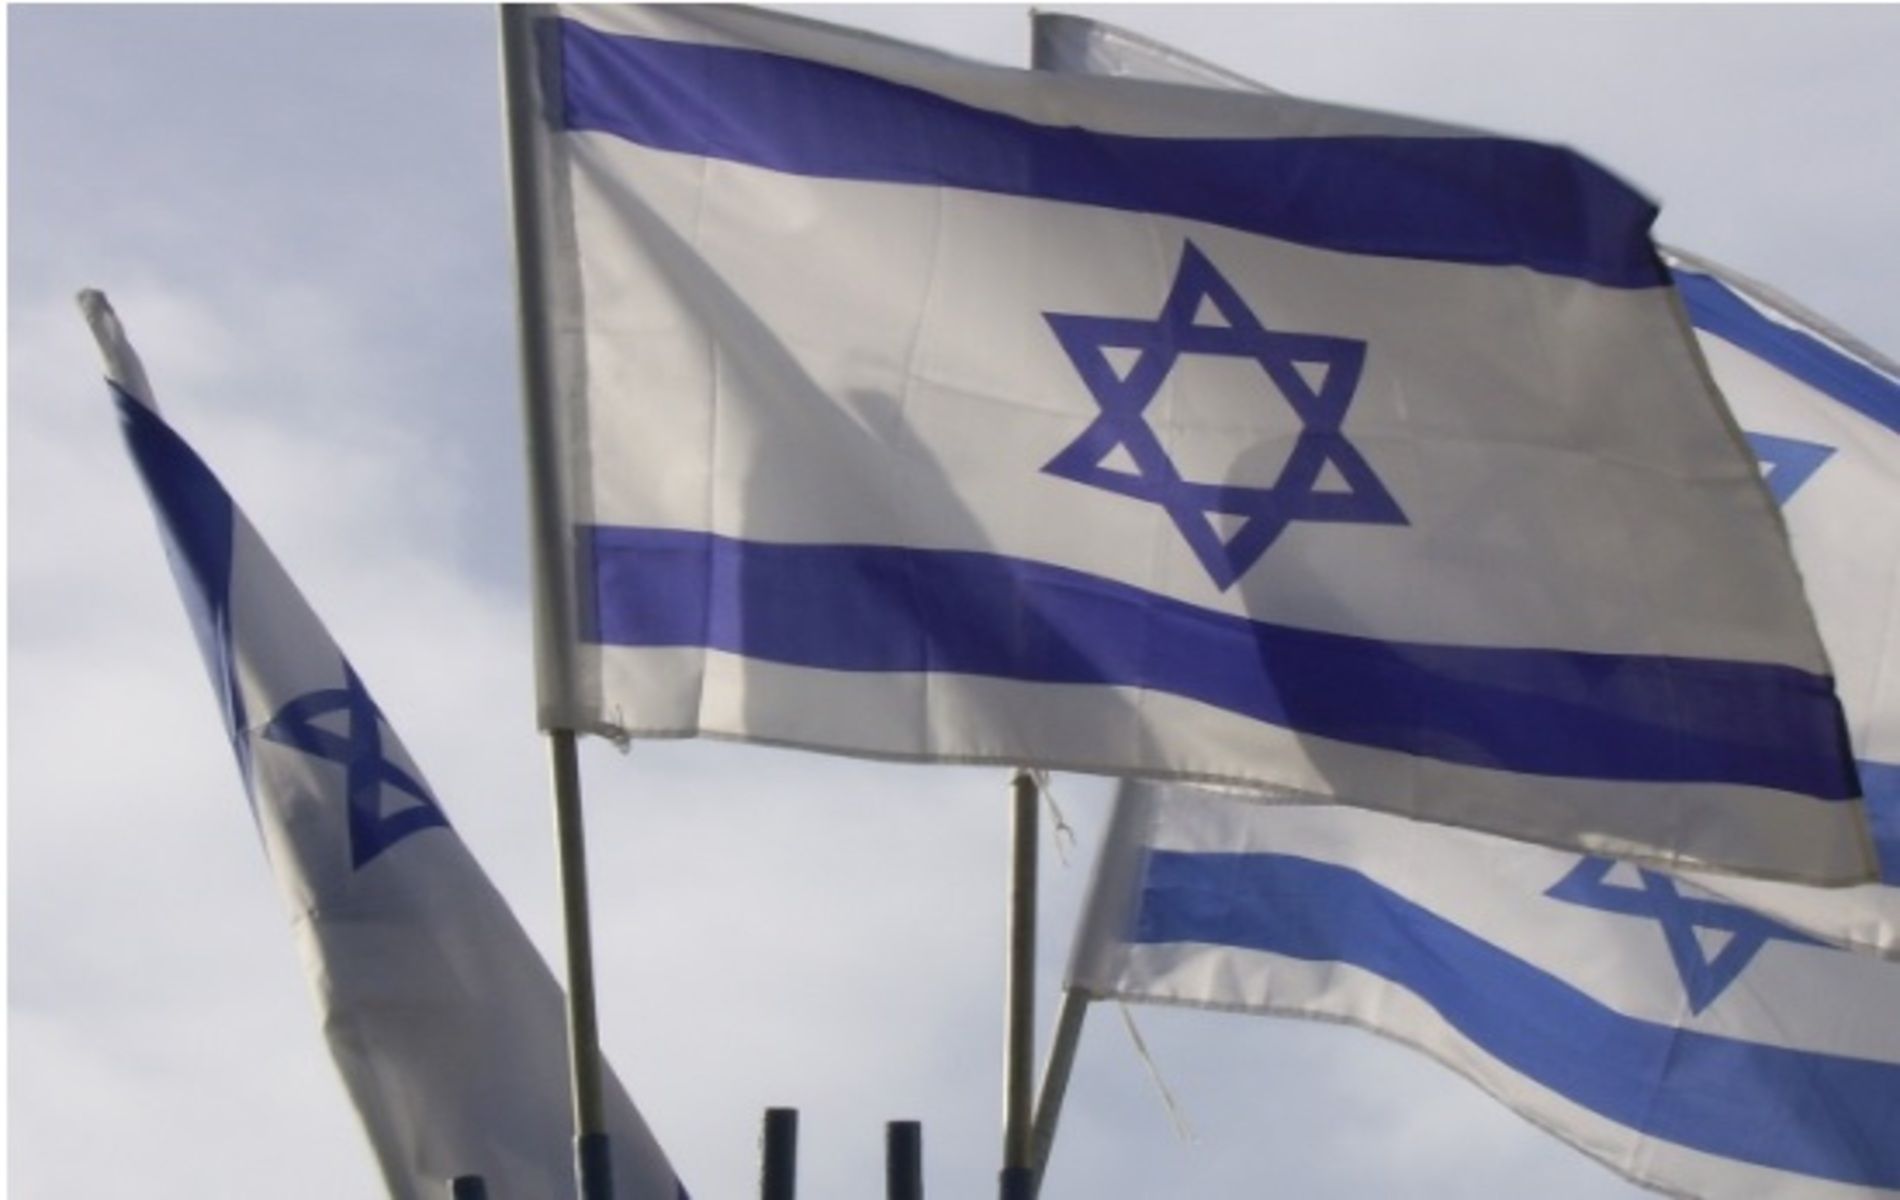 Hukum boikot produk Israel